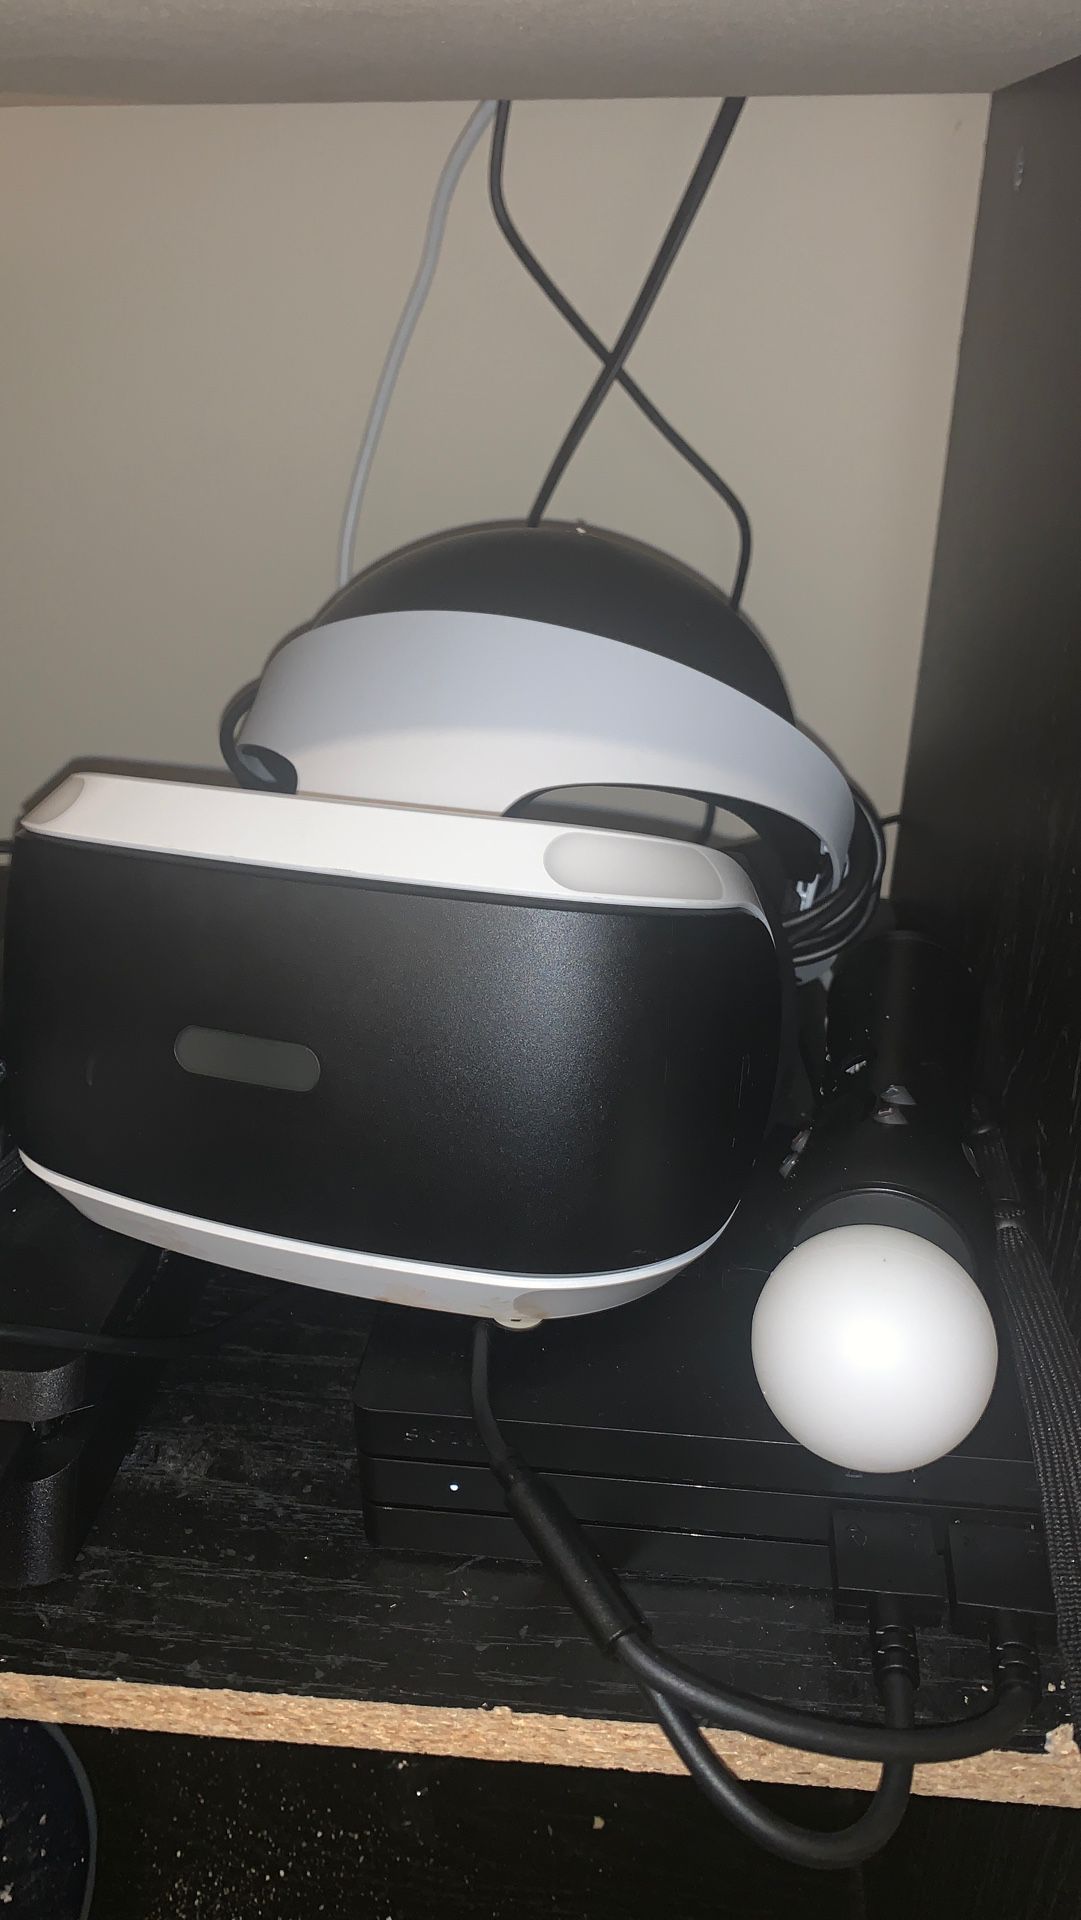 PS VR bundle w demo games